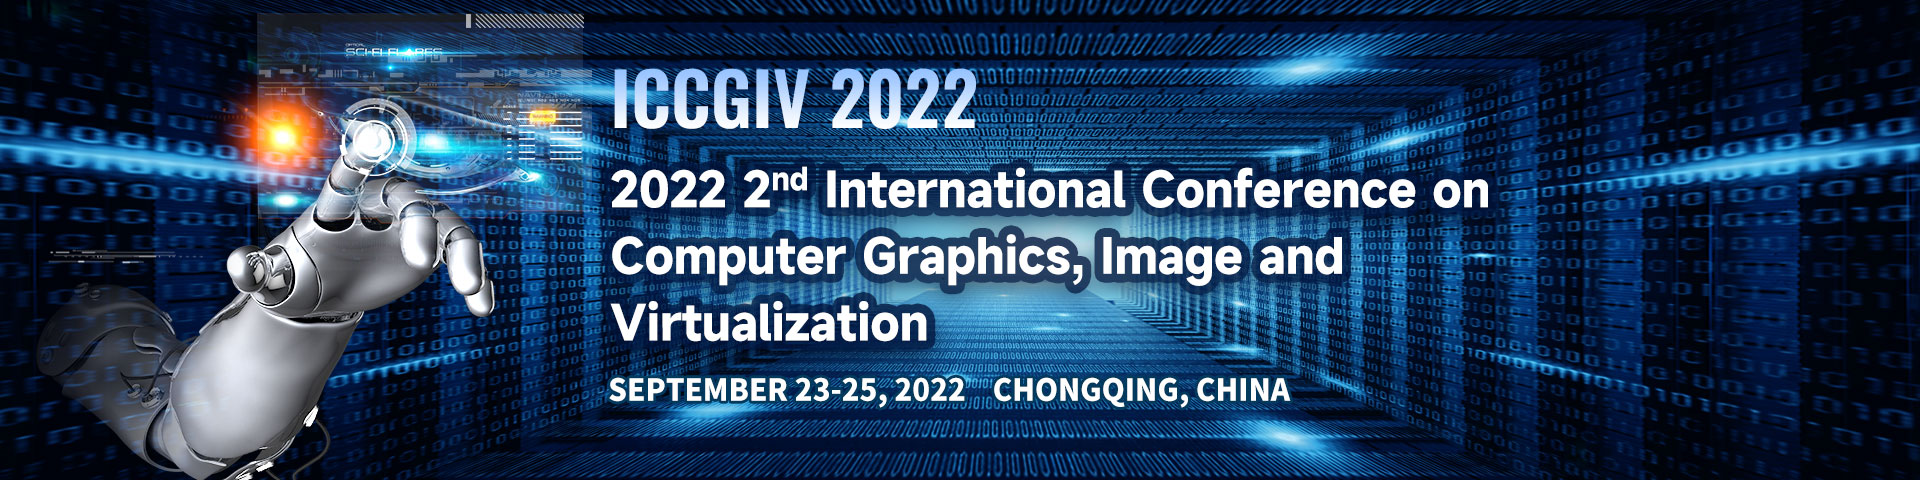 9月-重庆站-ICCGIV-艾思平台上线平台1920x480英.jpg